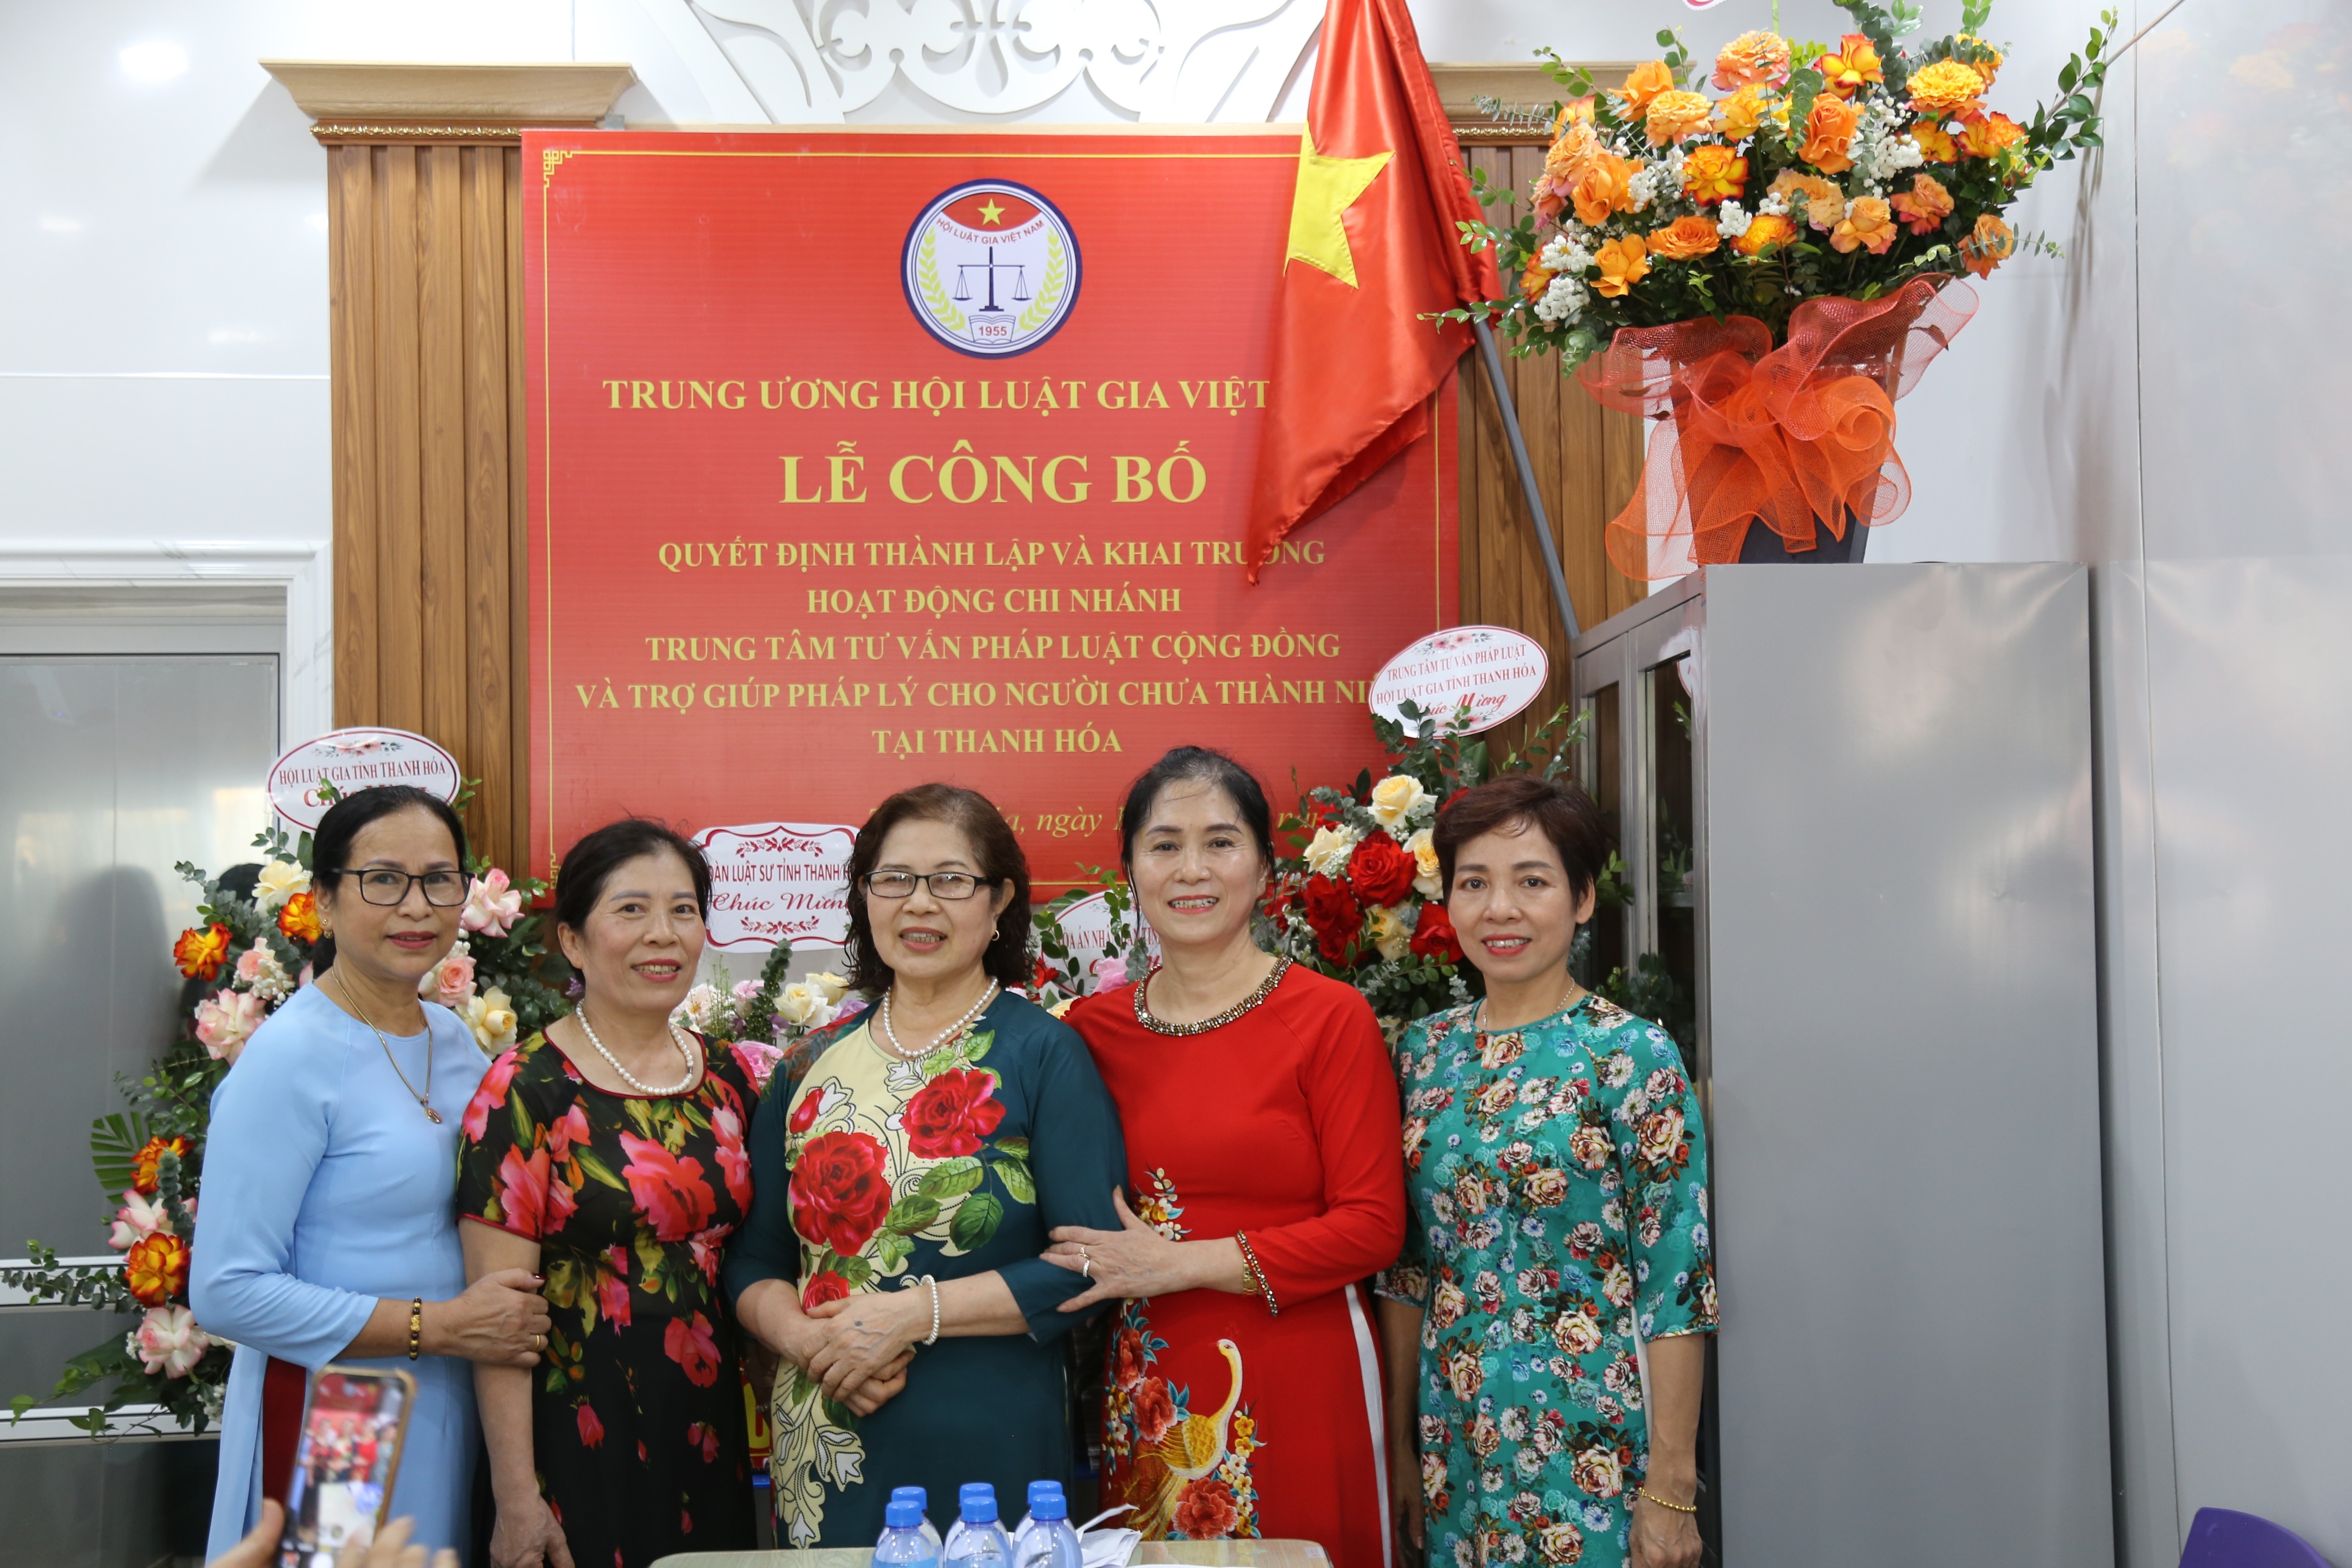 Sự kiện - Thành lập chi nhánh thứ 5 của Trung tâm Tư vấn pháp luật cho người chưa thành niên tại Thanh Hoá (Hình 7).